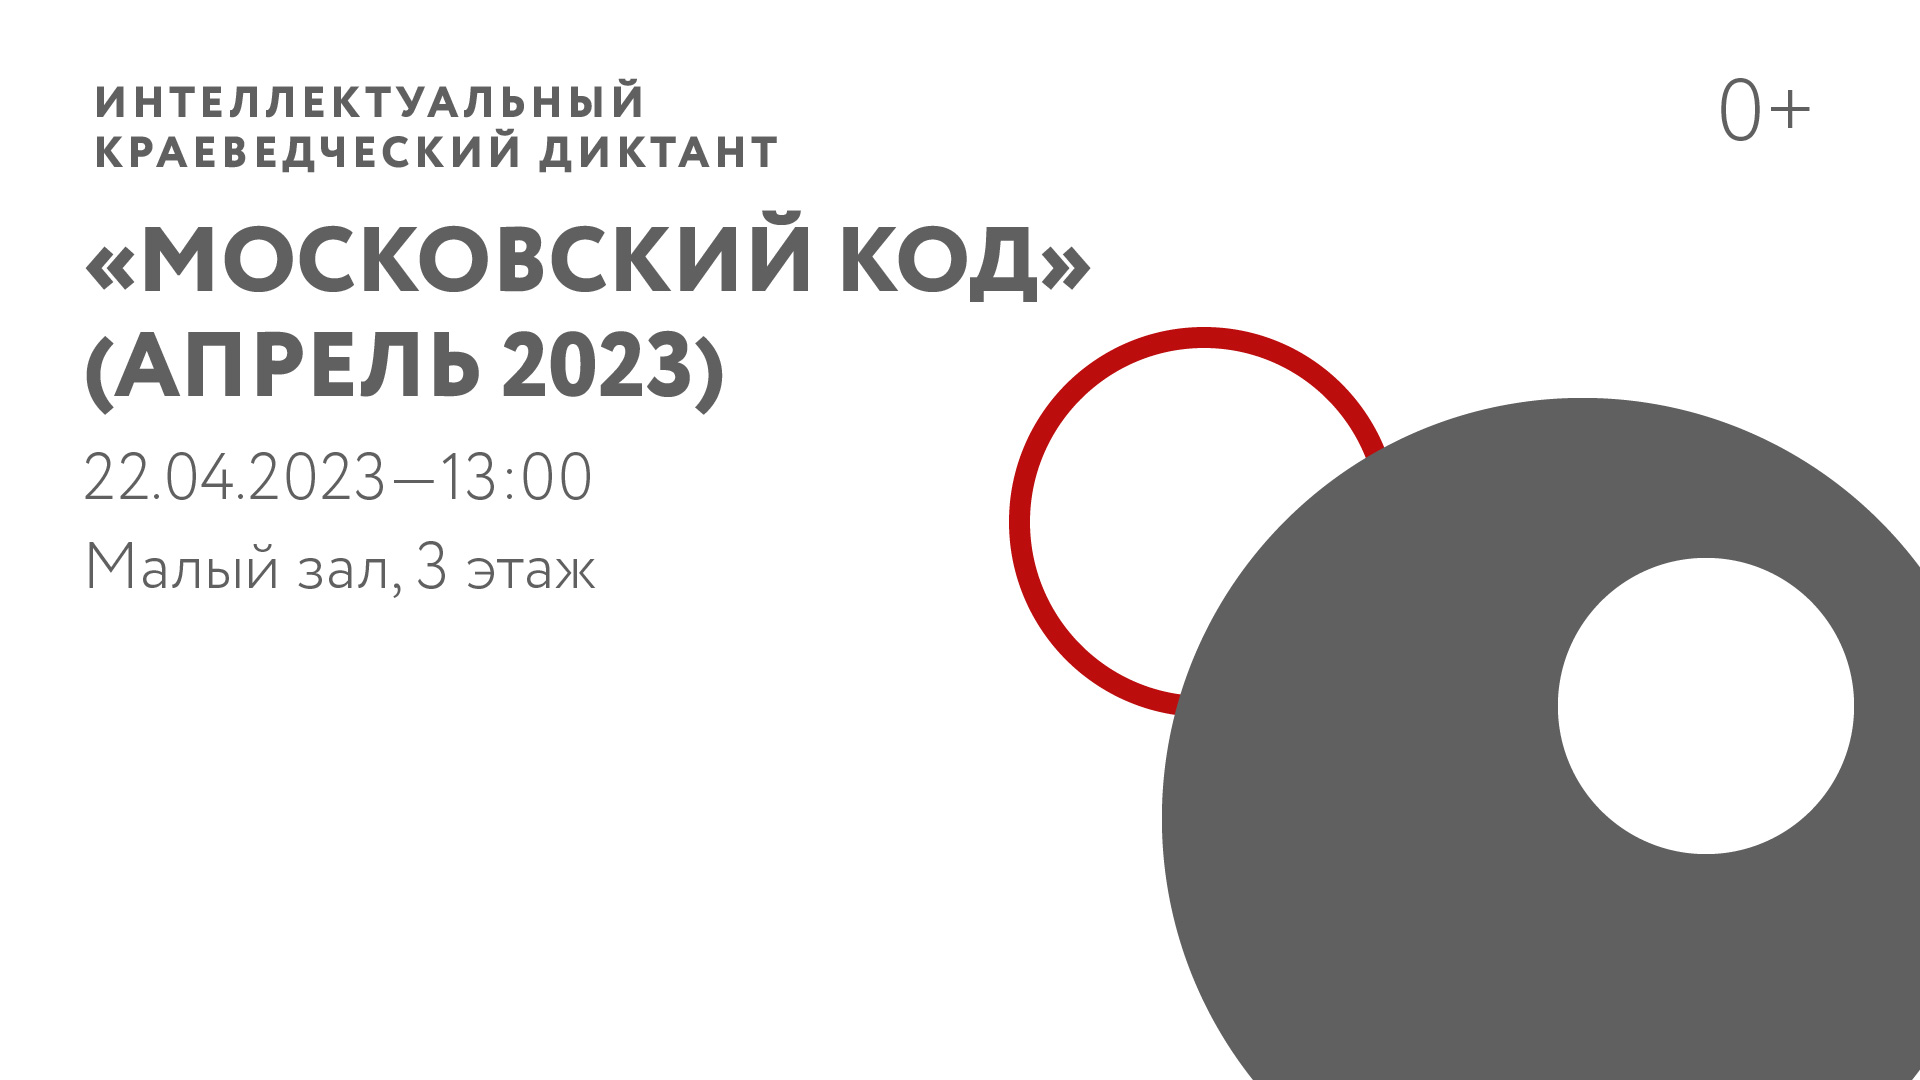 Интеллектуальный краеведческий диктант «Московский код» (Апрель 2023)